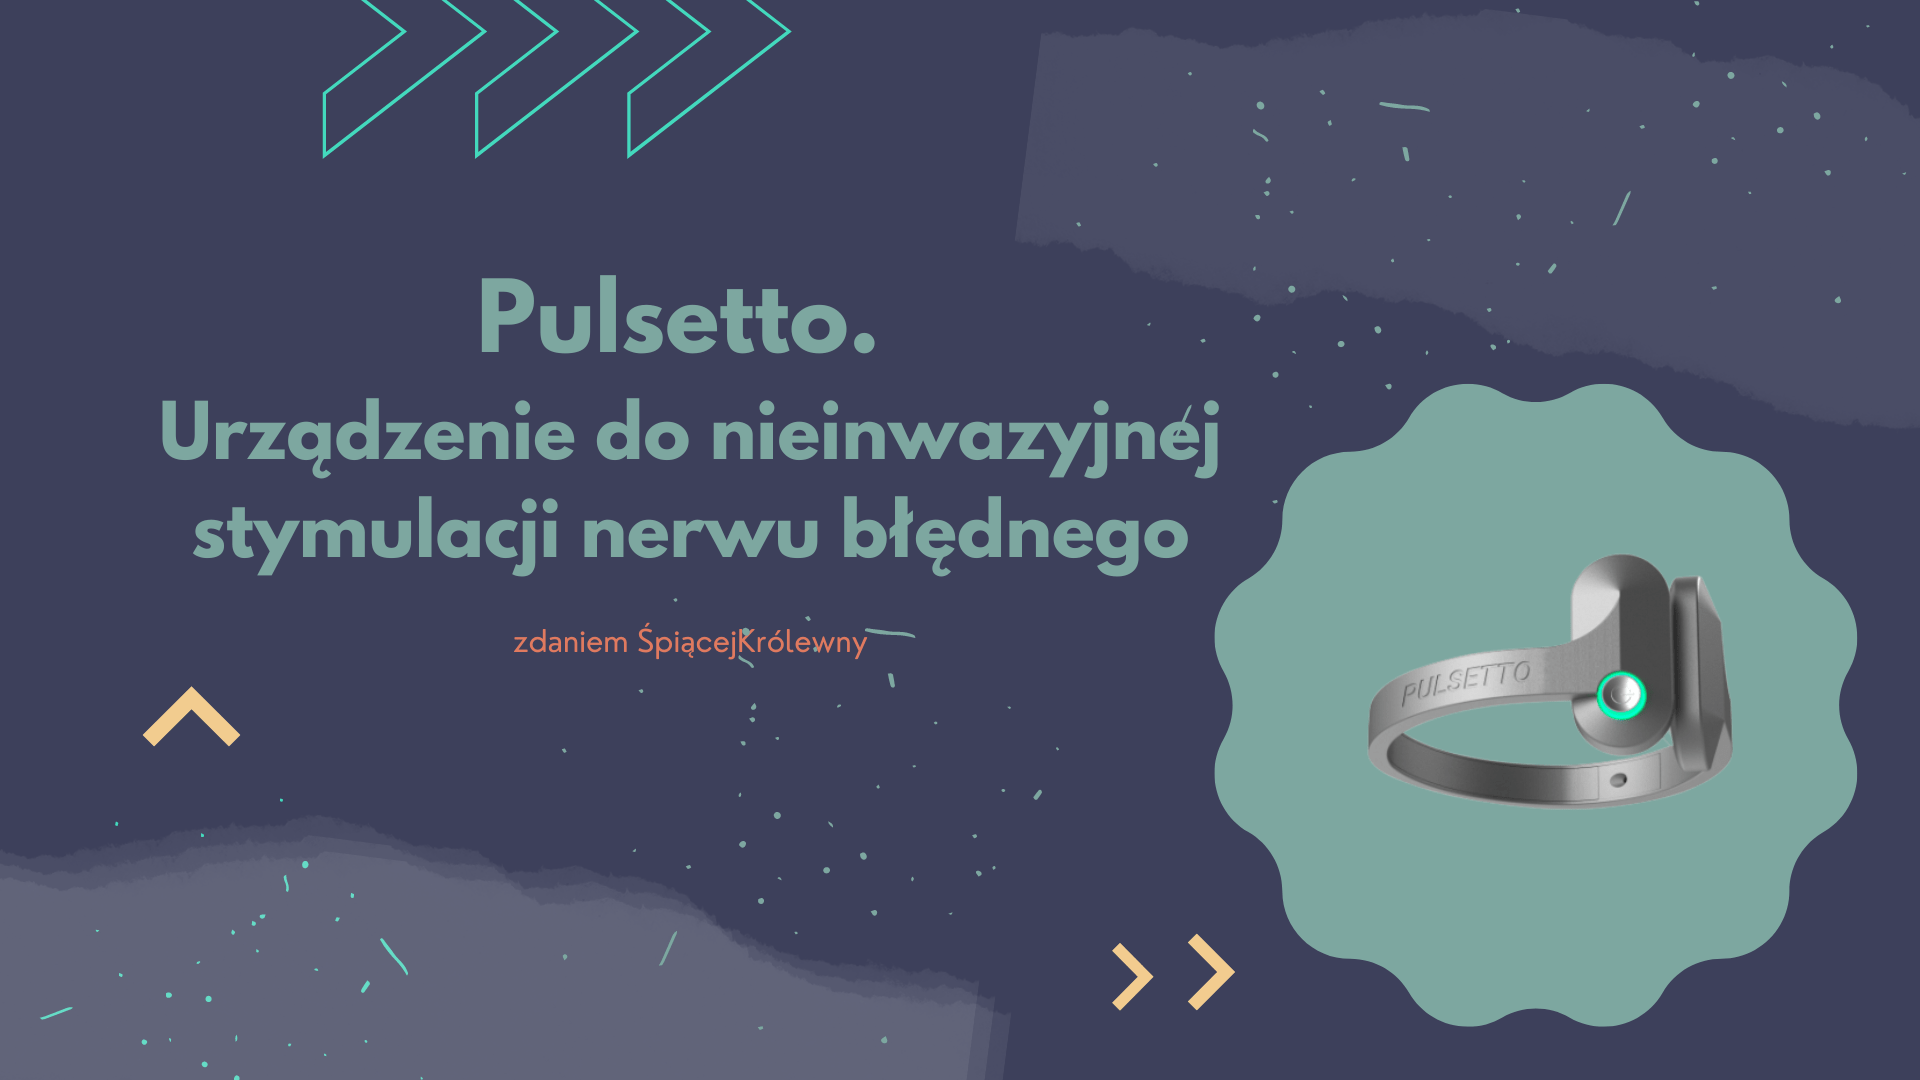 Pulsetto – urządzenie do stymulacji nerwu błędnego